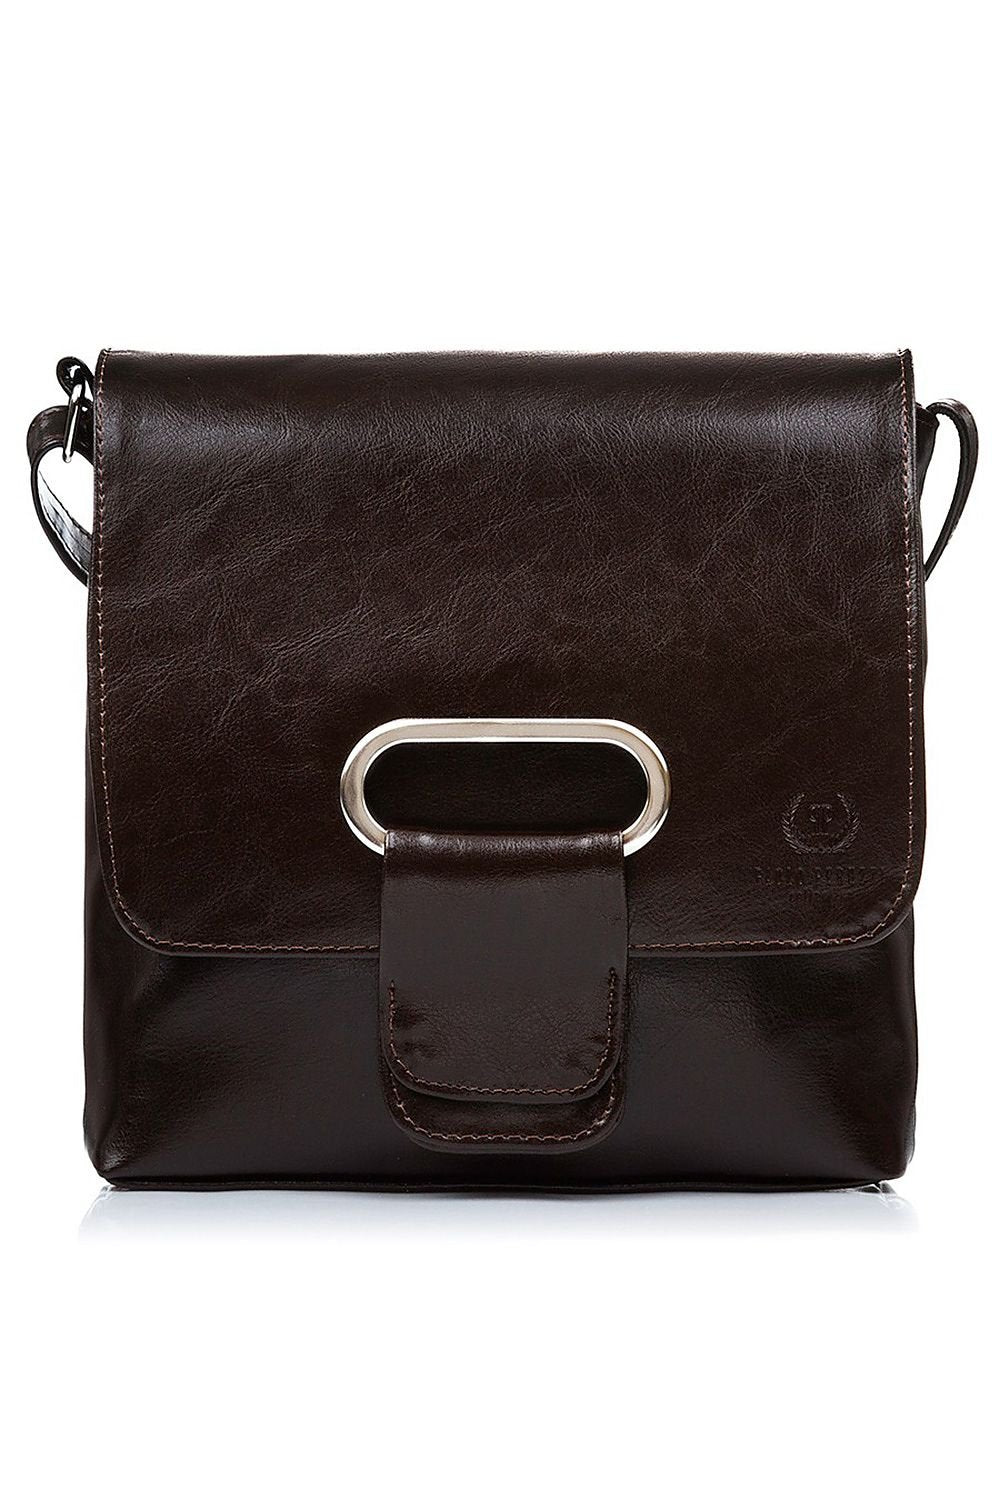 TEEK - Natural Leather Shoulderbag BAG TEEK MH dark brown  